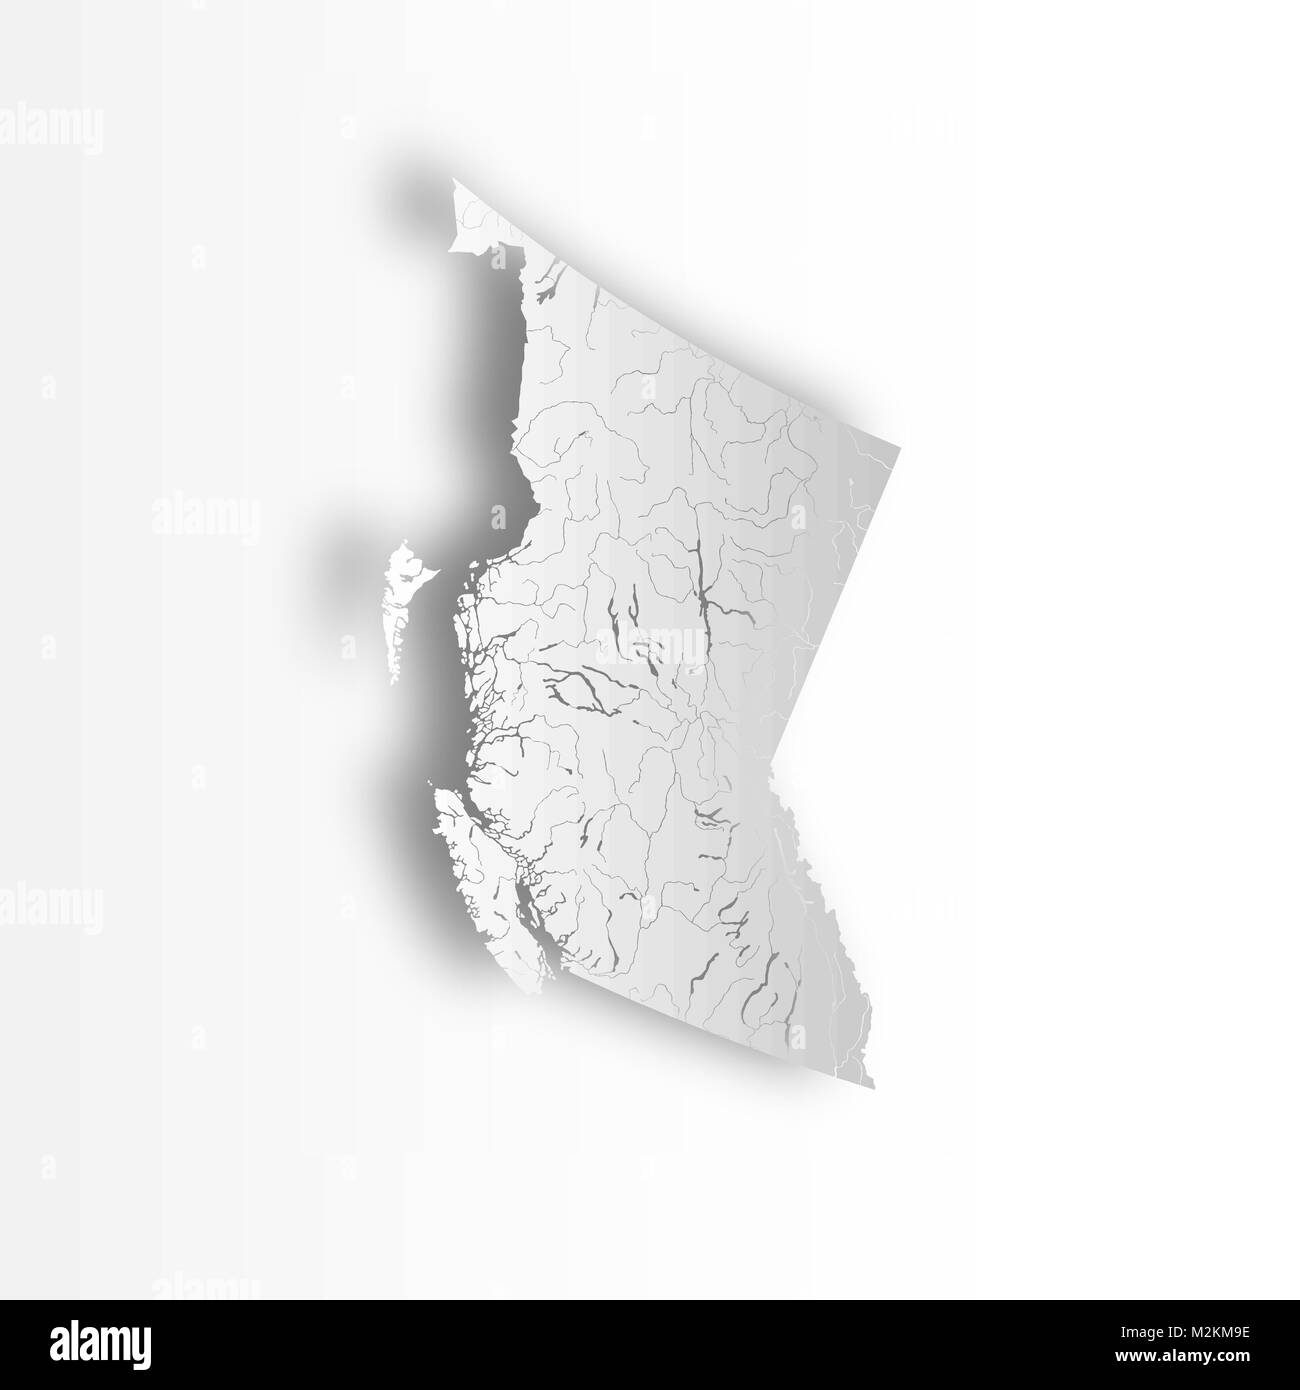 Les provinces et territoires du Canada - Carte de la Colombie-Britannique avec effet coupe papier. Les rivières et lacs sont indiqués. Merci de regarder mes autres images de voiture Illustration de Vecteur